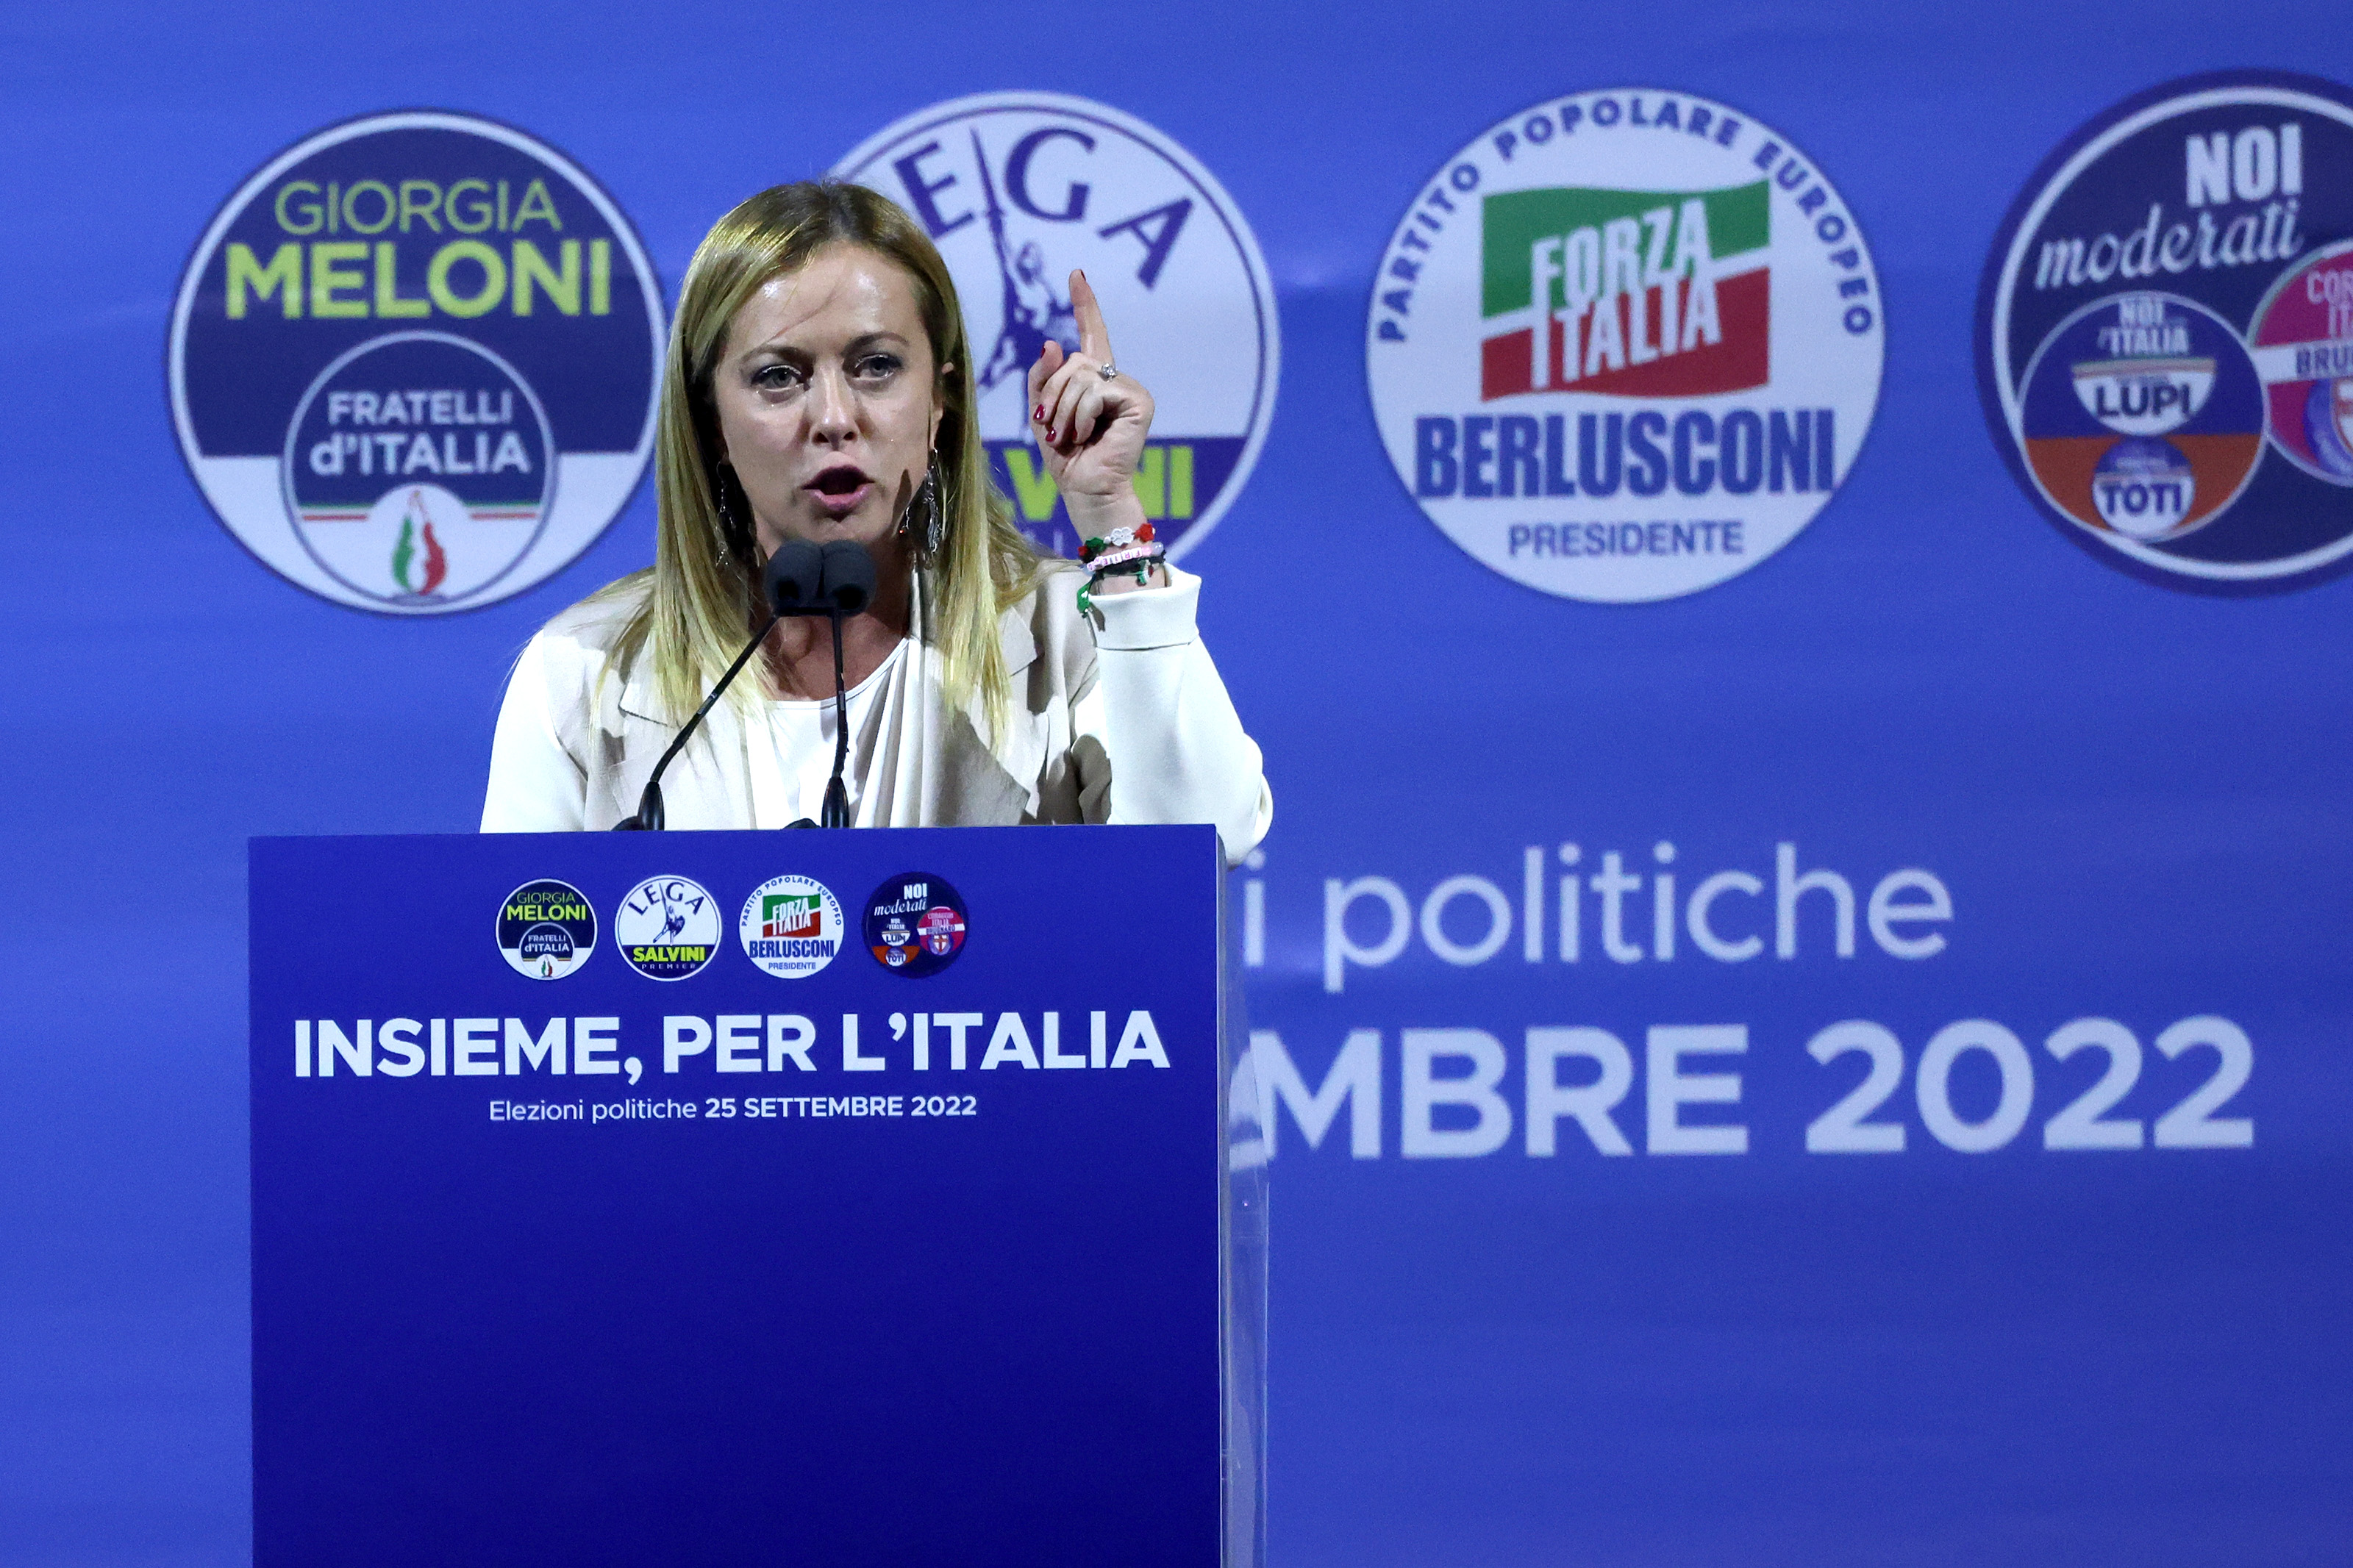 Italia vota: el auge de la derecha y el conservadurismo radical